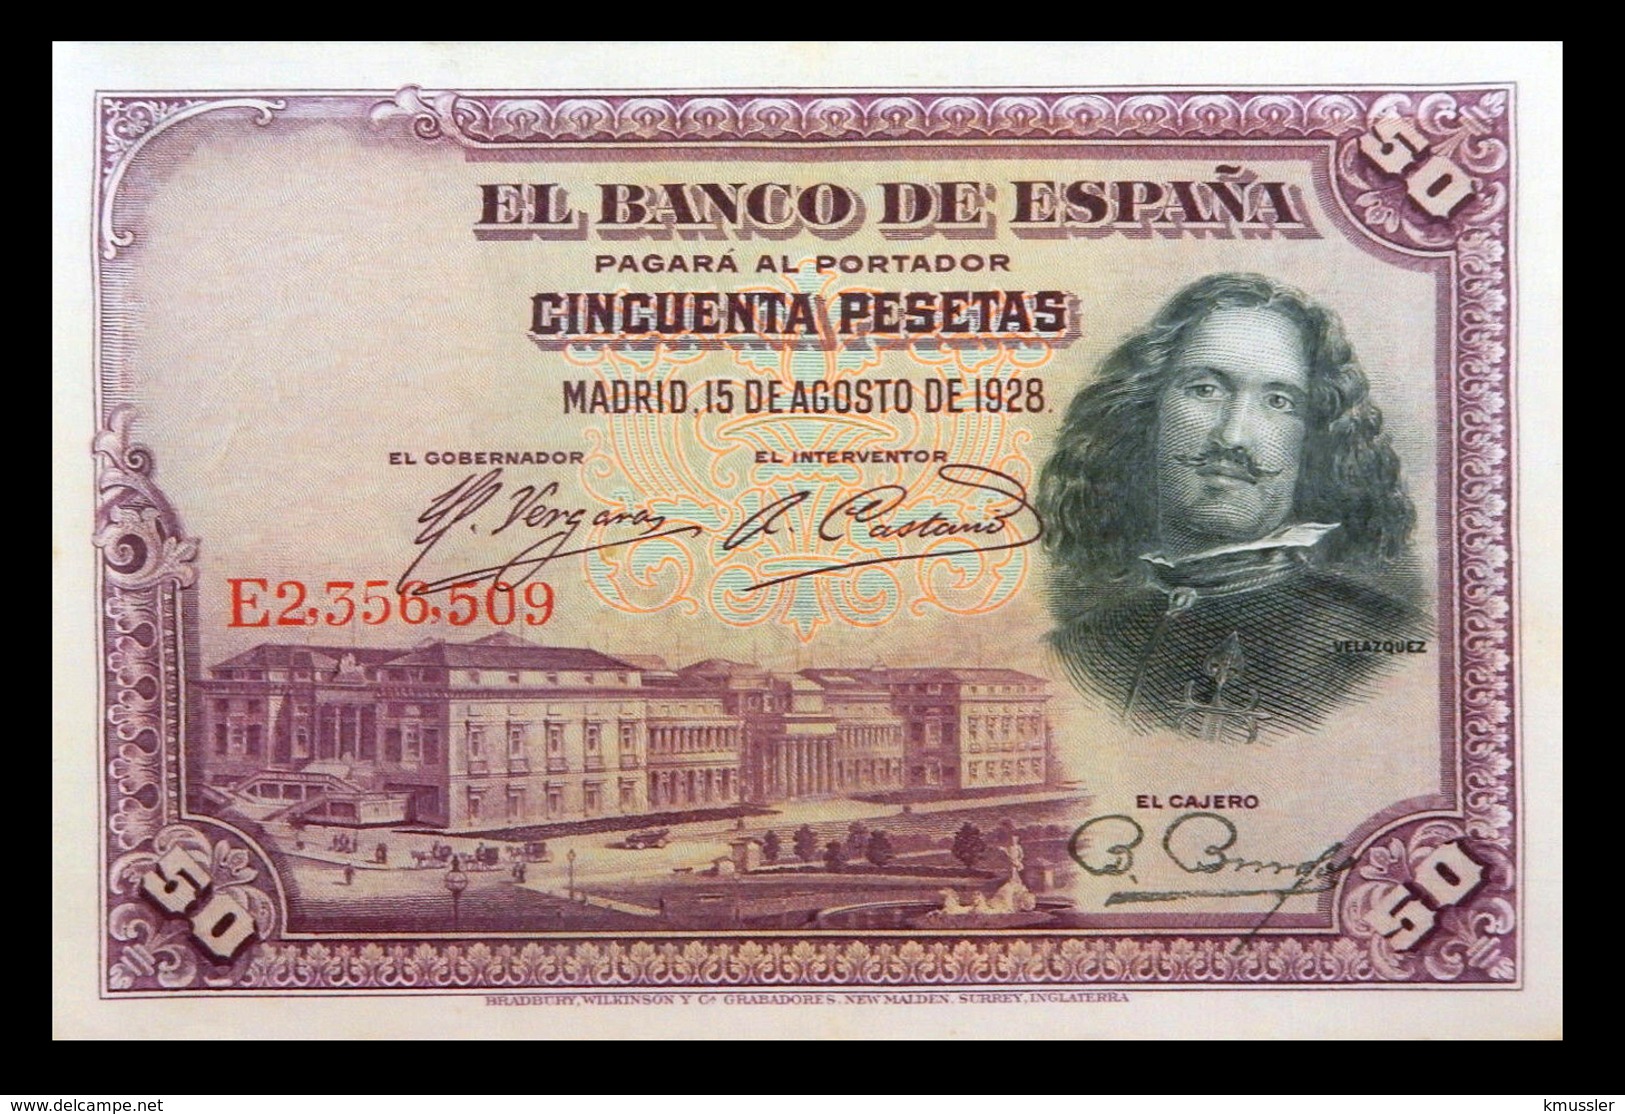 # # # Banknote Spanien (Spain) 50 Pesetas 1928 # # # - 50 Pesetas